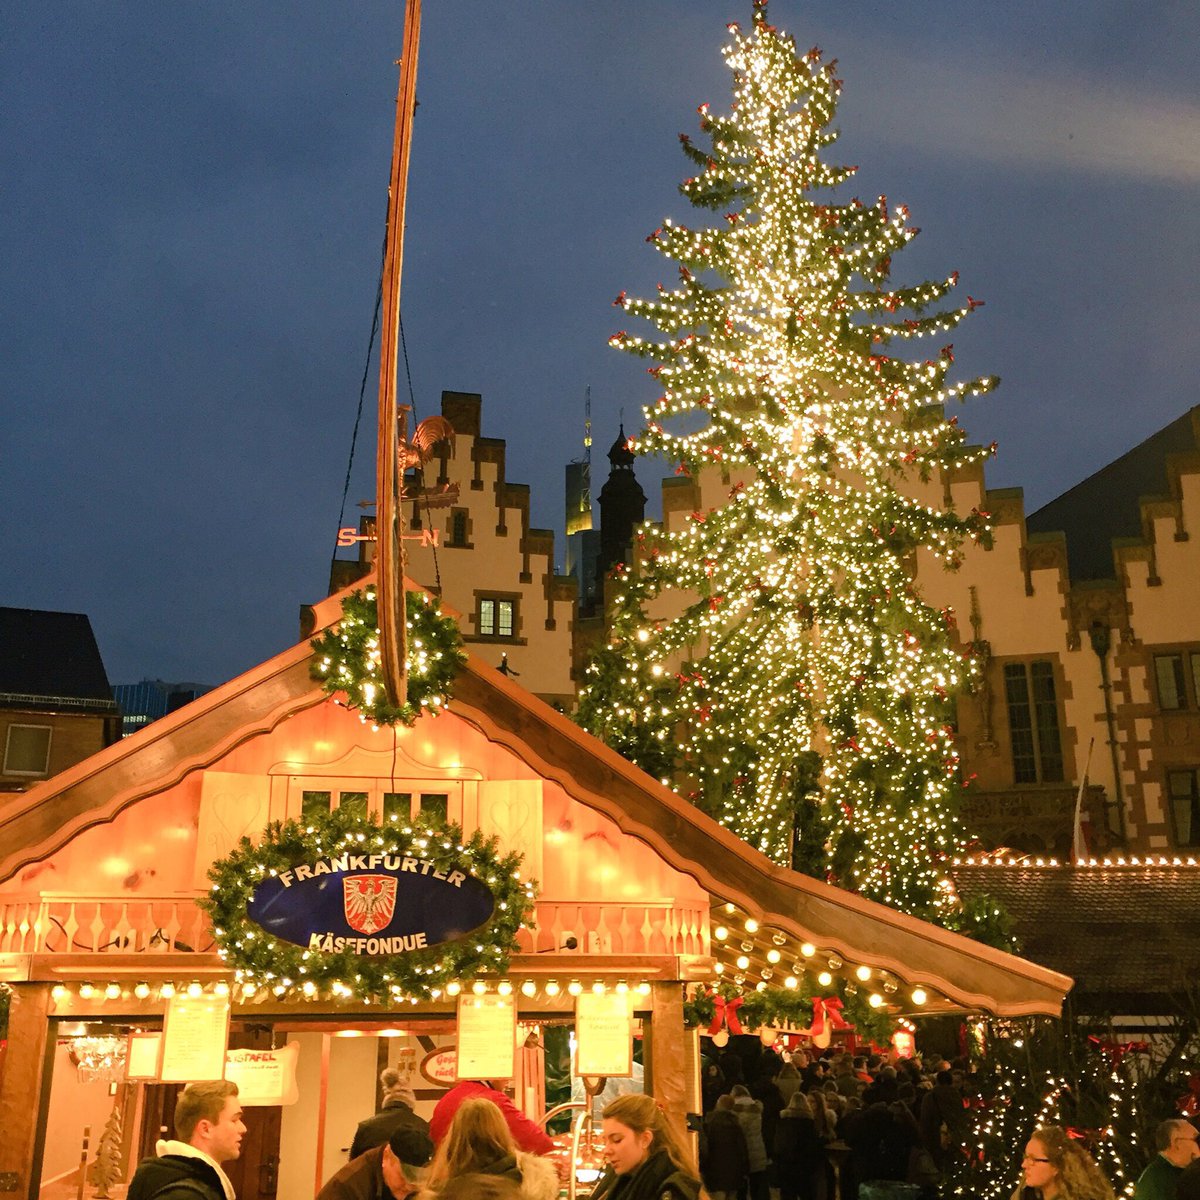 ドイツ幻想風景 A Twitter 商都として中世以来繁栄を極めるフランクフルトのクリスマス マーケット イルミネーションが盛大で まさにきらびやかな光の祭典 このマーケットを象徴する食べ物といえば やっぱり黄金のアーモンドでしょう クリスマスと冬のドイツ